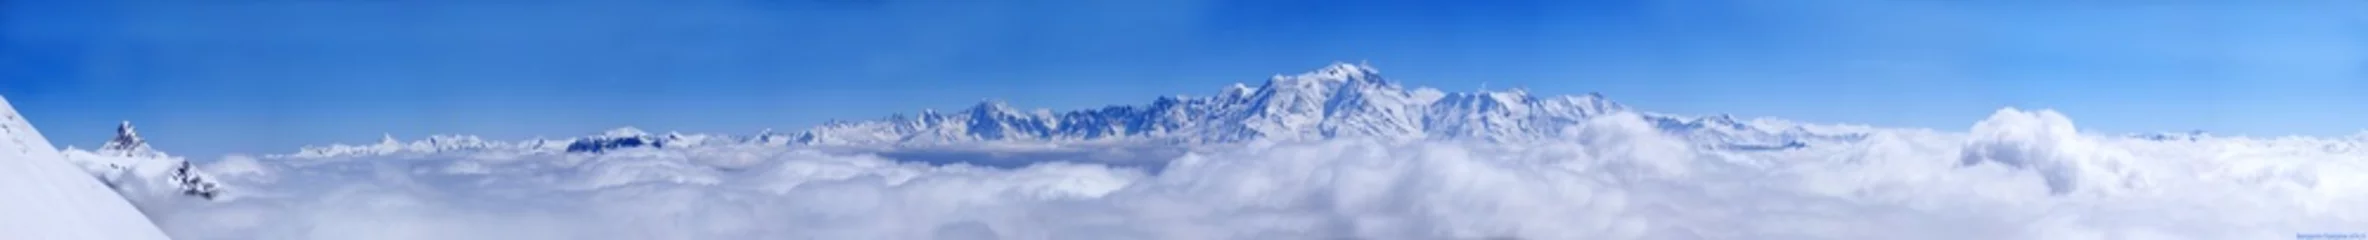 Poster Mont Blanc mont blanc landschap